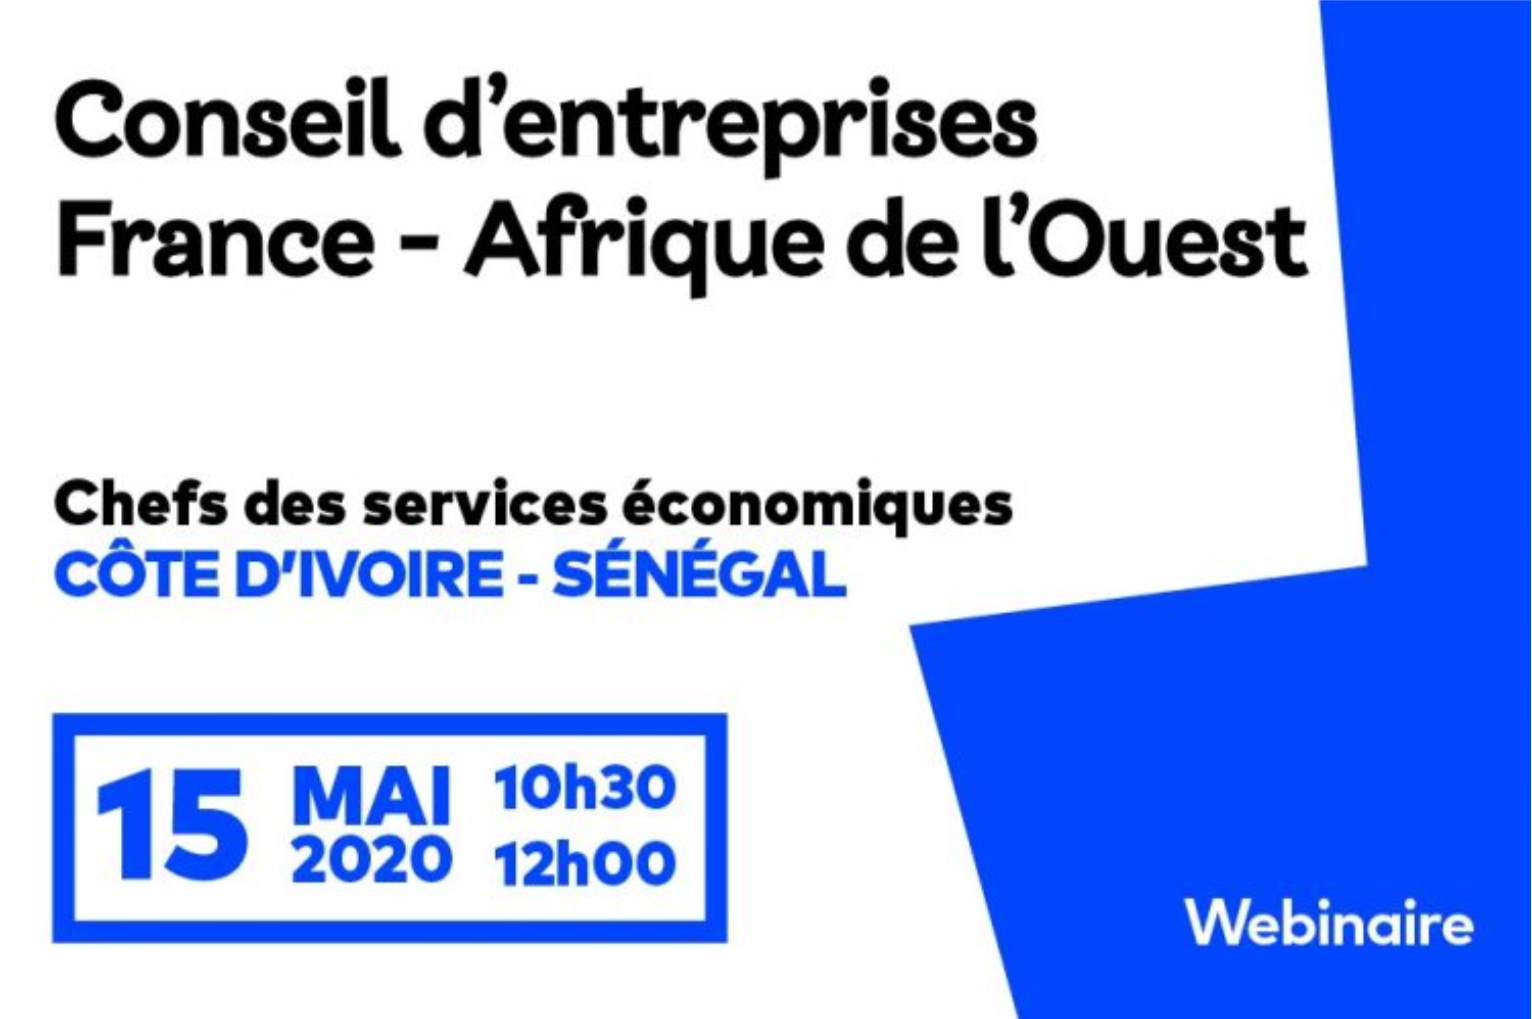 Webinaire – Conseil d’entreprises France – Afrique de l’Ouest de Medef International